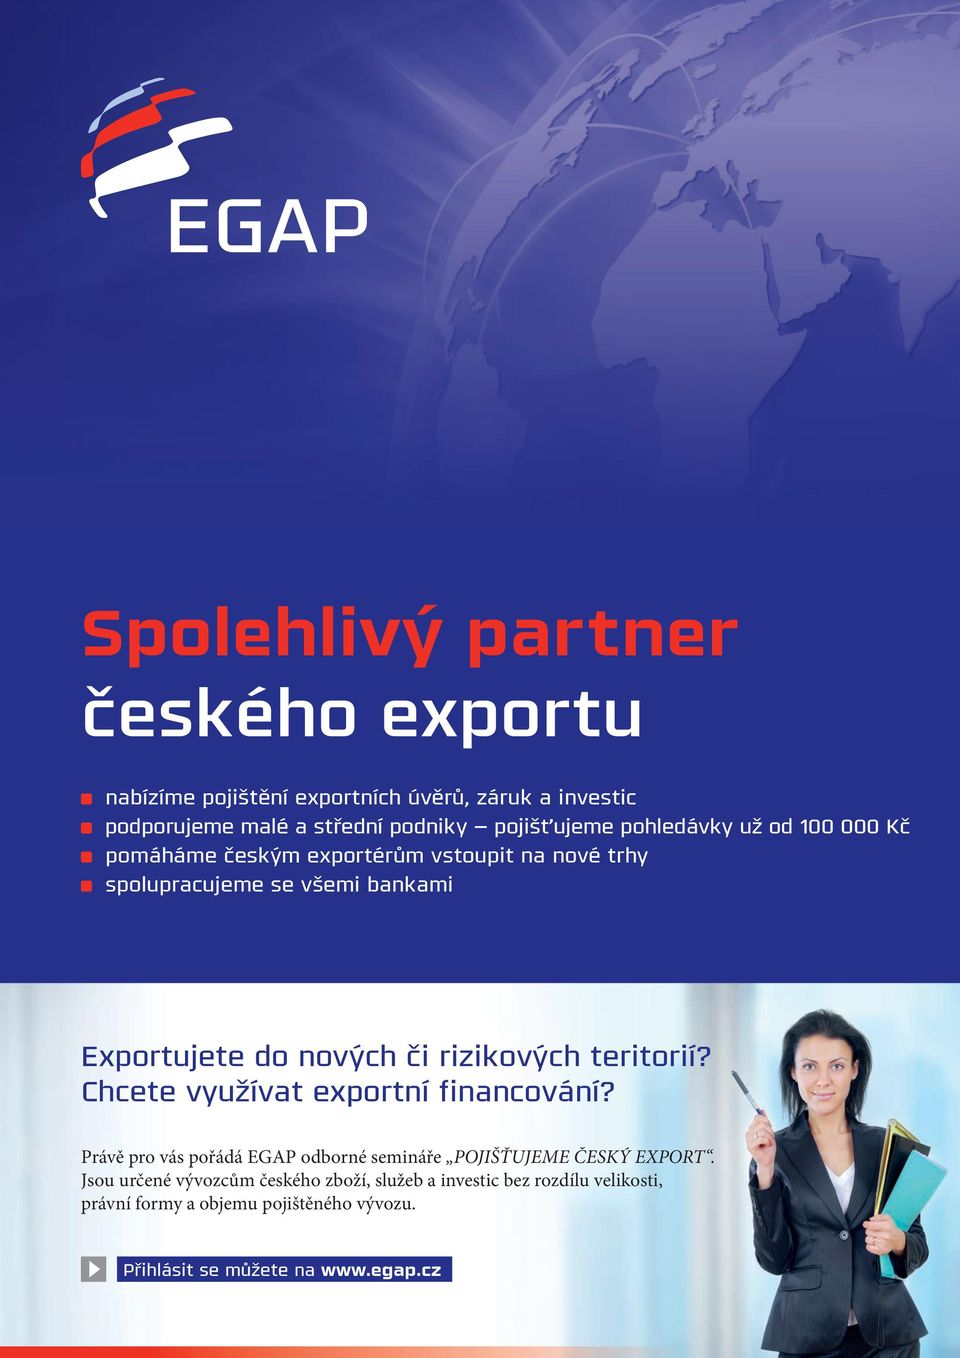 rizikových teritorií? Chcete využívat exportní financování? Právě pro vás pořádá EGAP odborné semináře POJIŠŤUJEME ČESKÝ EXPORT.